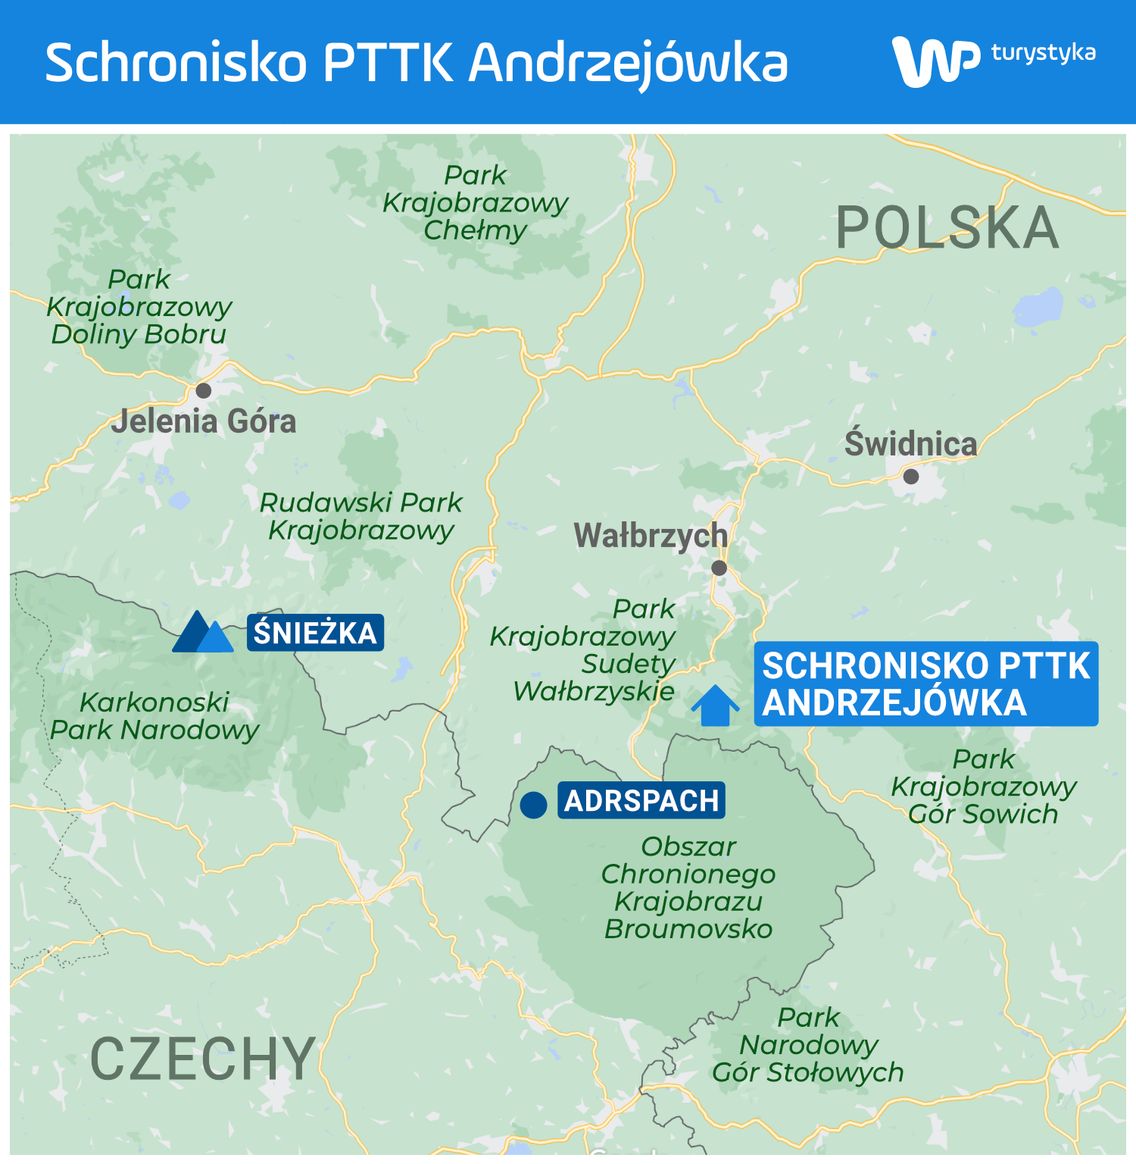 Schronisko PTTK Andrzejówka